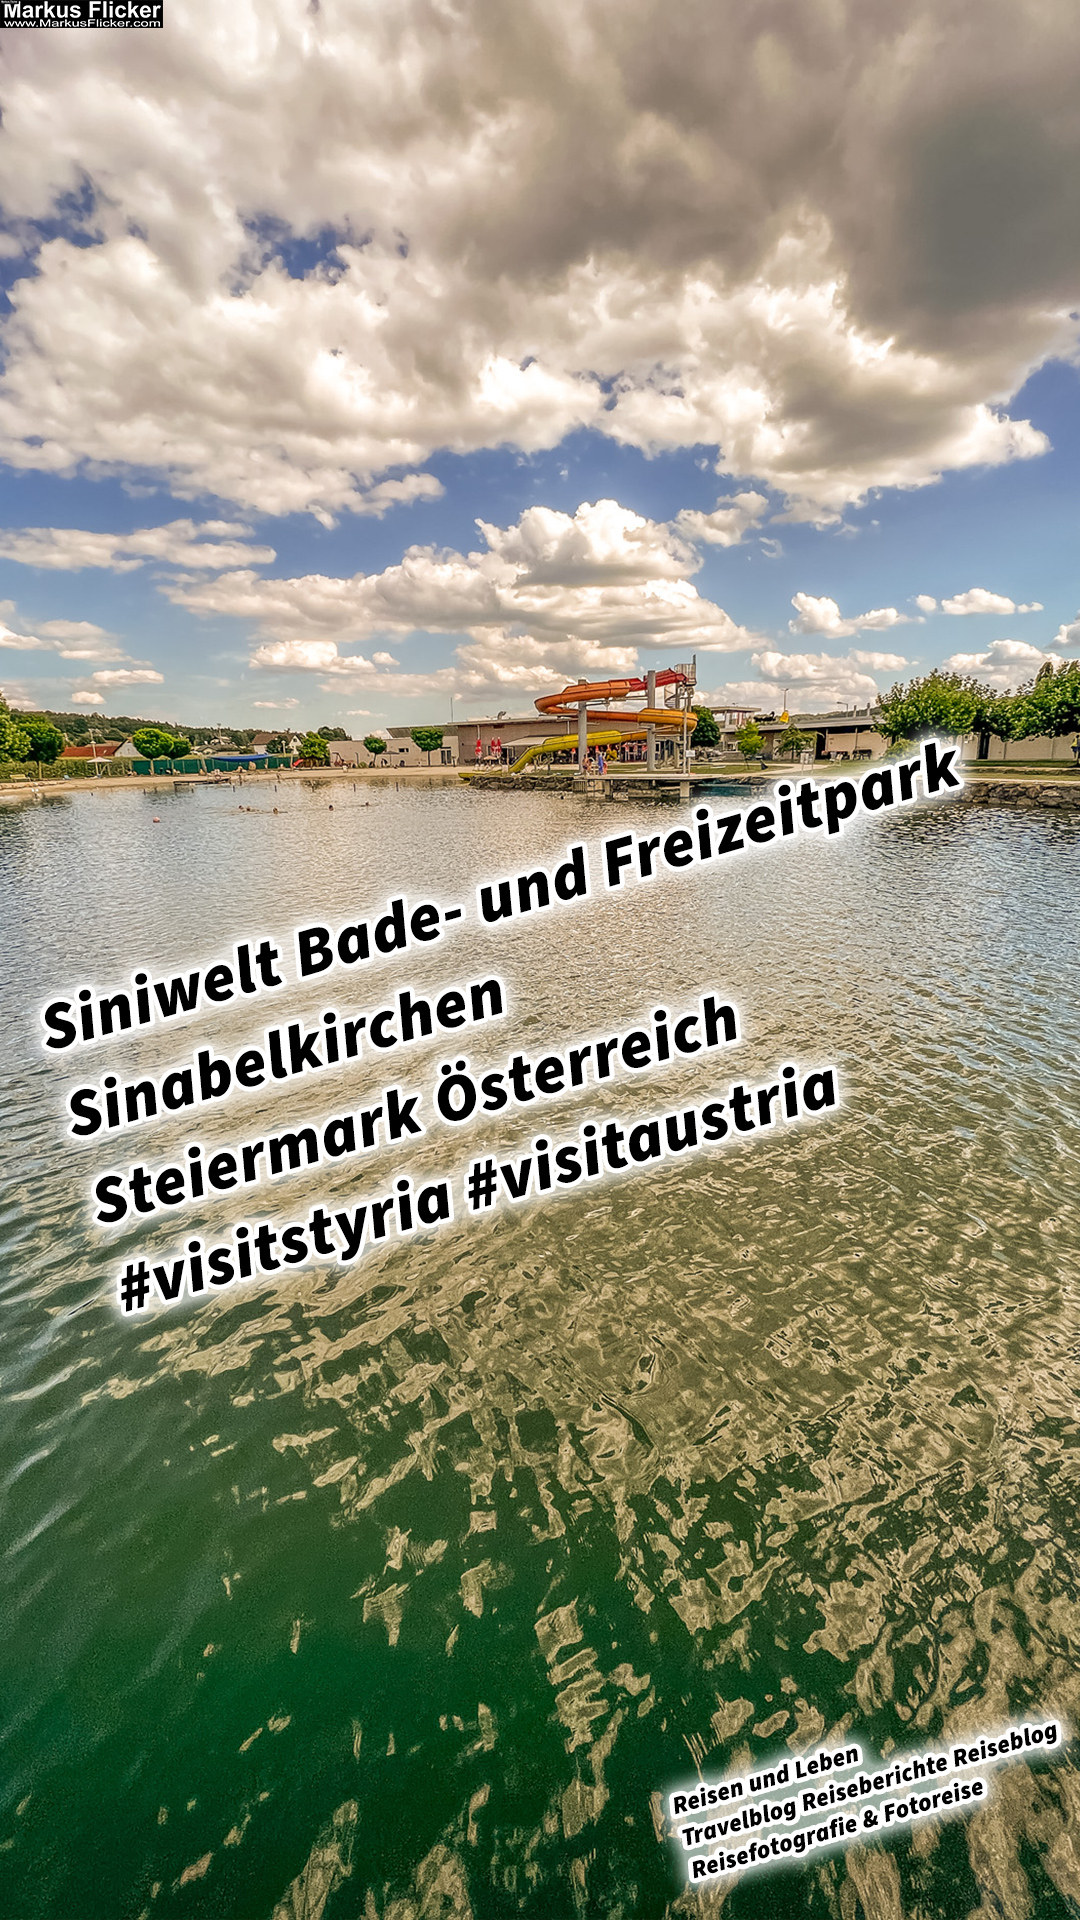 Siniwelt Bade- und Freizeitpark Sinabelkirchen Steiermark Österreich #visitstyria #visitaustria